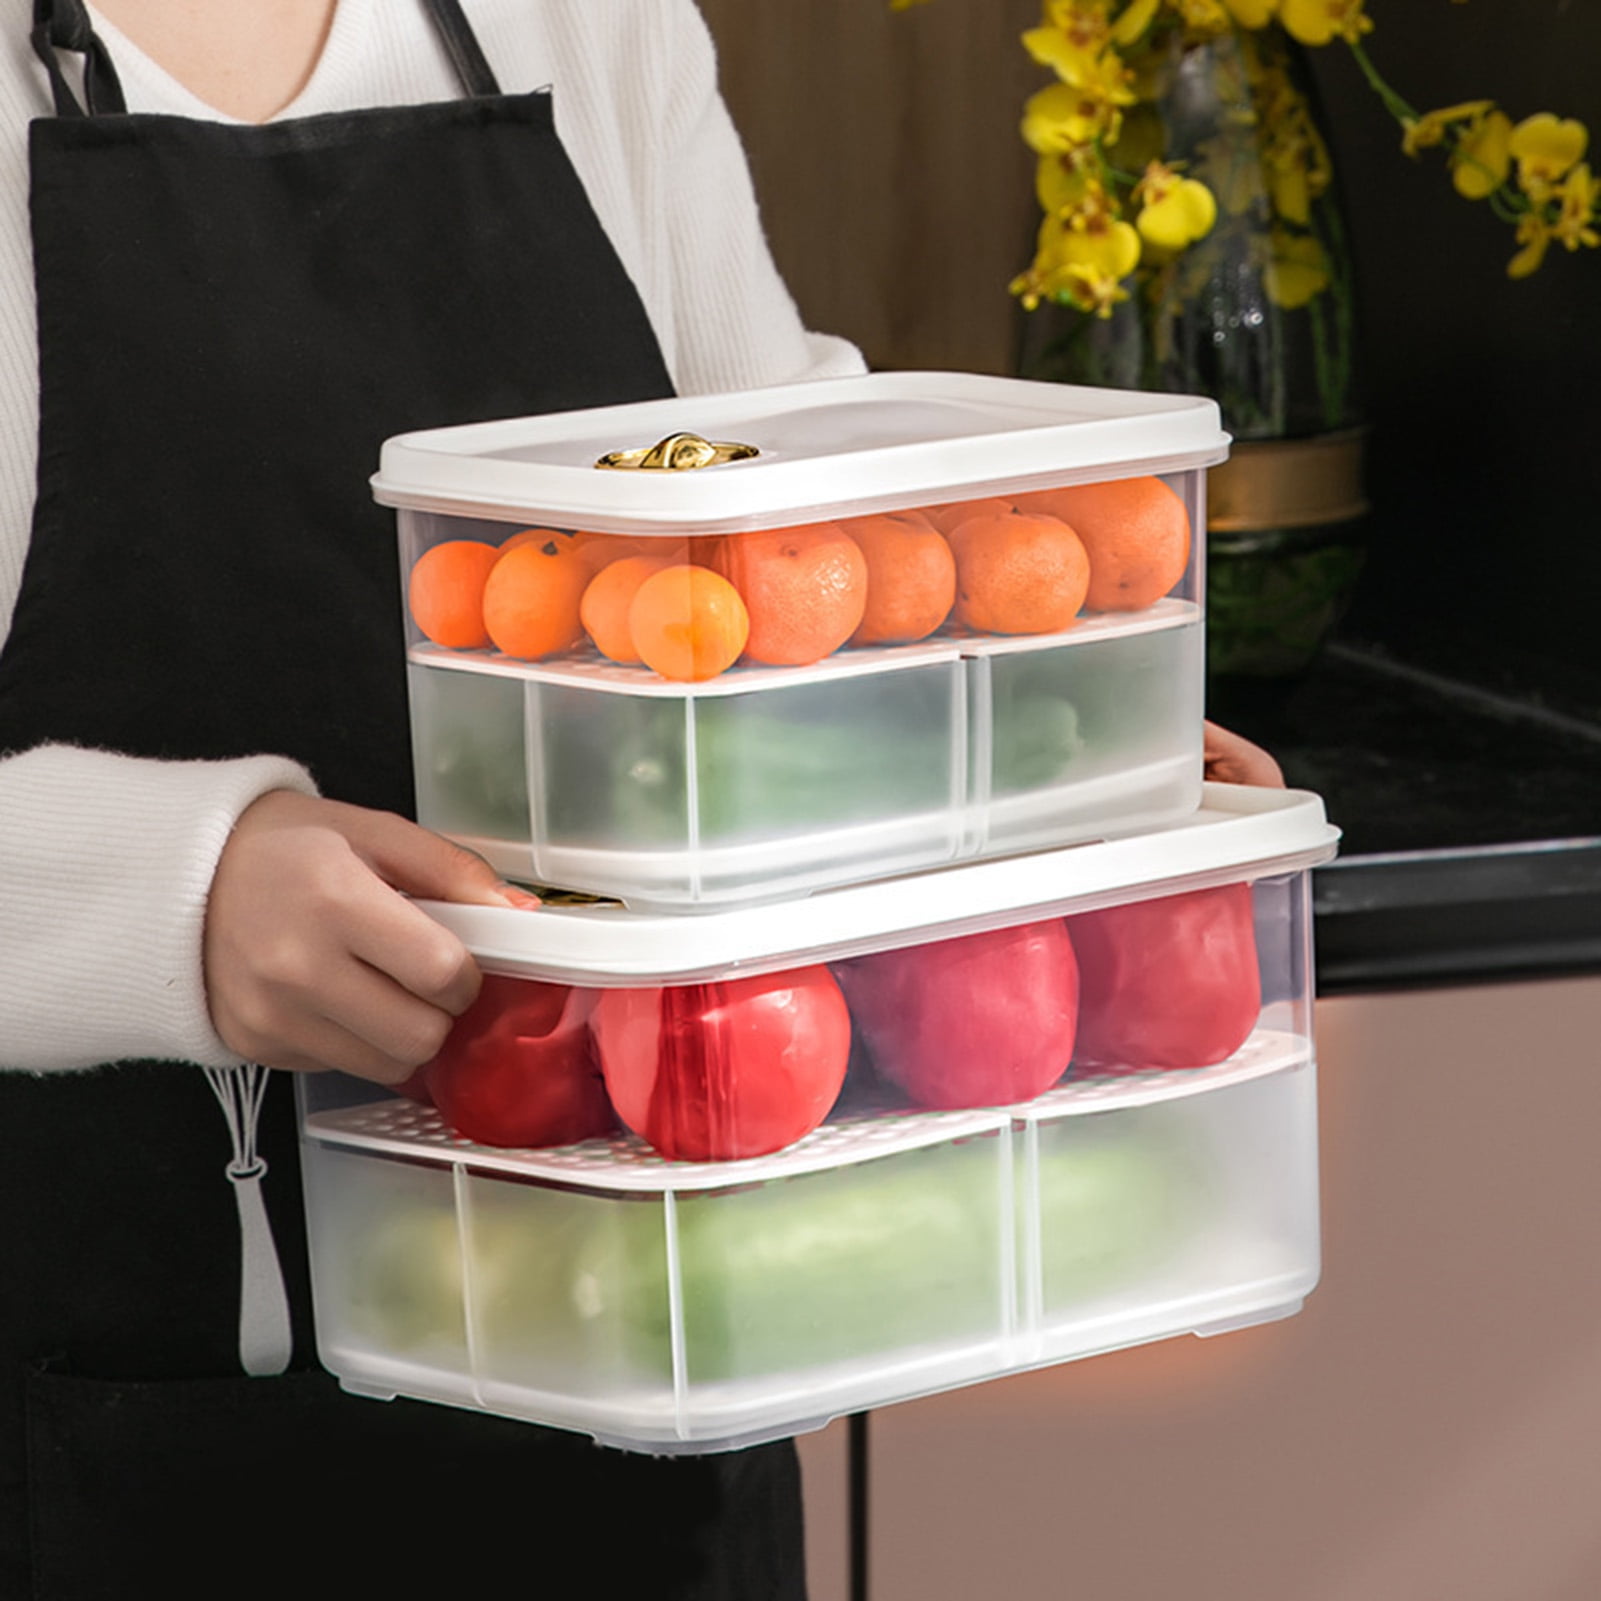 Refrigerator Storage Box, Fridge Organizer, Fresh Fruit & Vegetable Boxes,  Drain Basket Storage Containers, Pantry Kitchen Organizer, Kitchen  Accessories - Temu